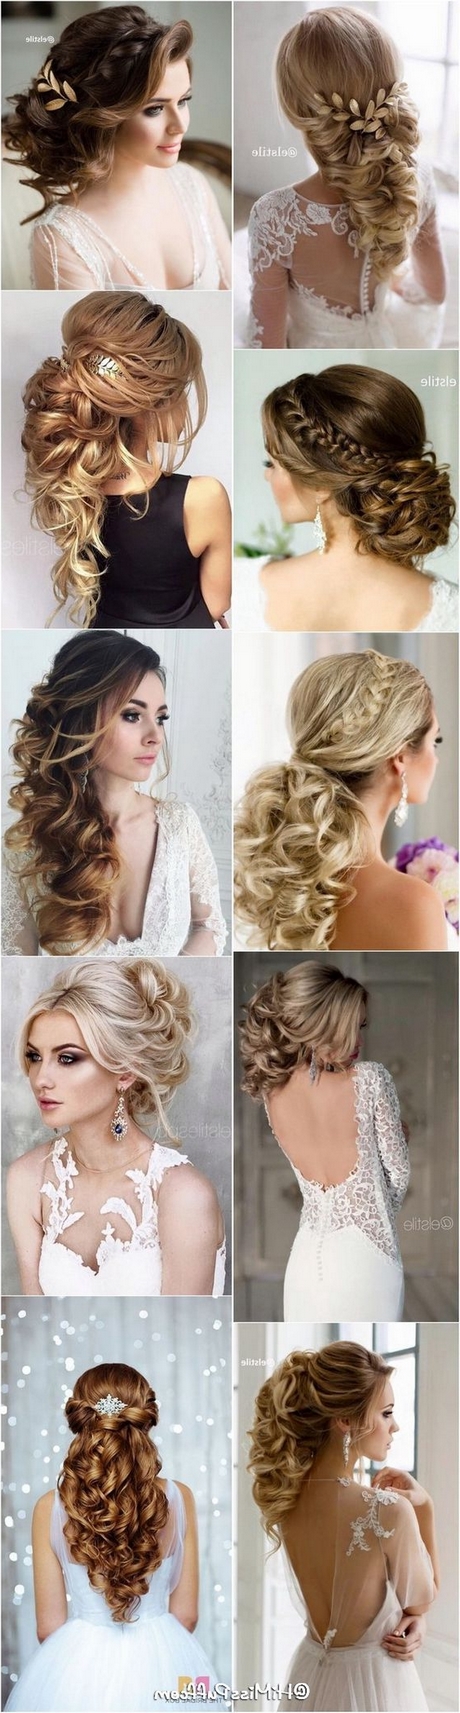 hairstyles-for-weddings-2021-74_16 Hairstyles for weddings 2021